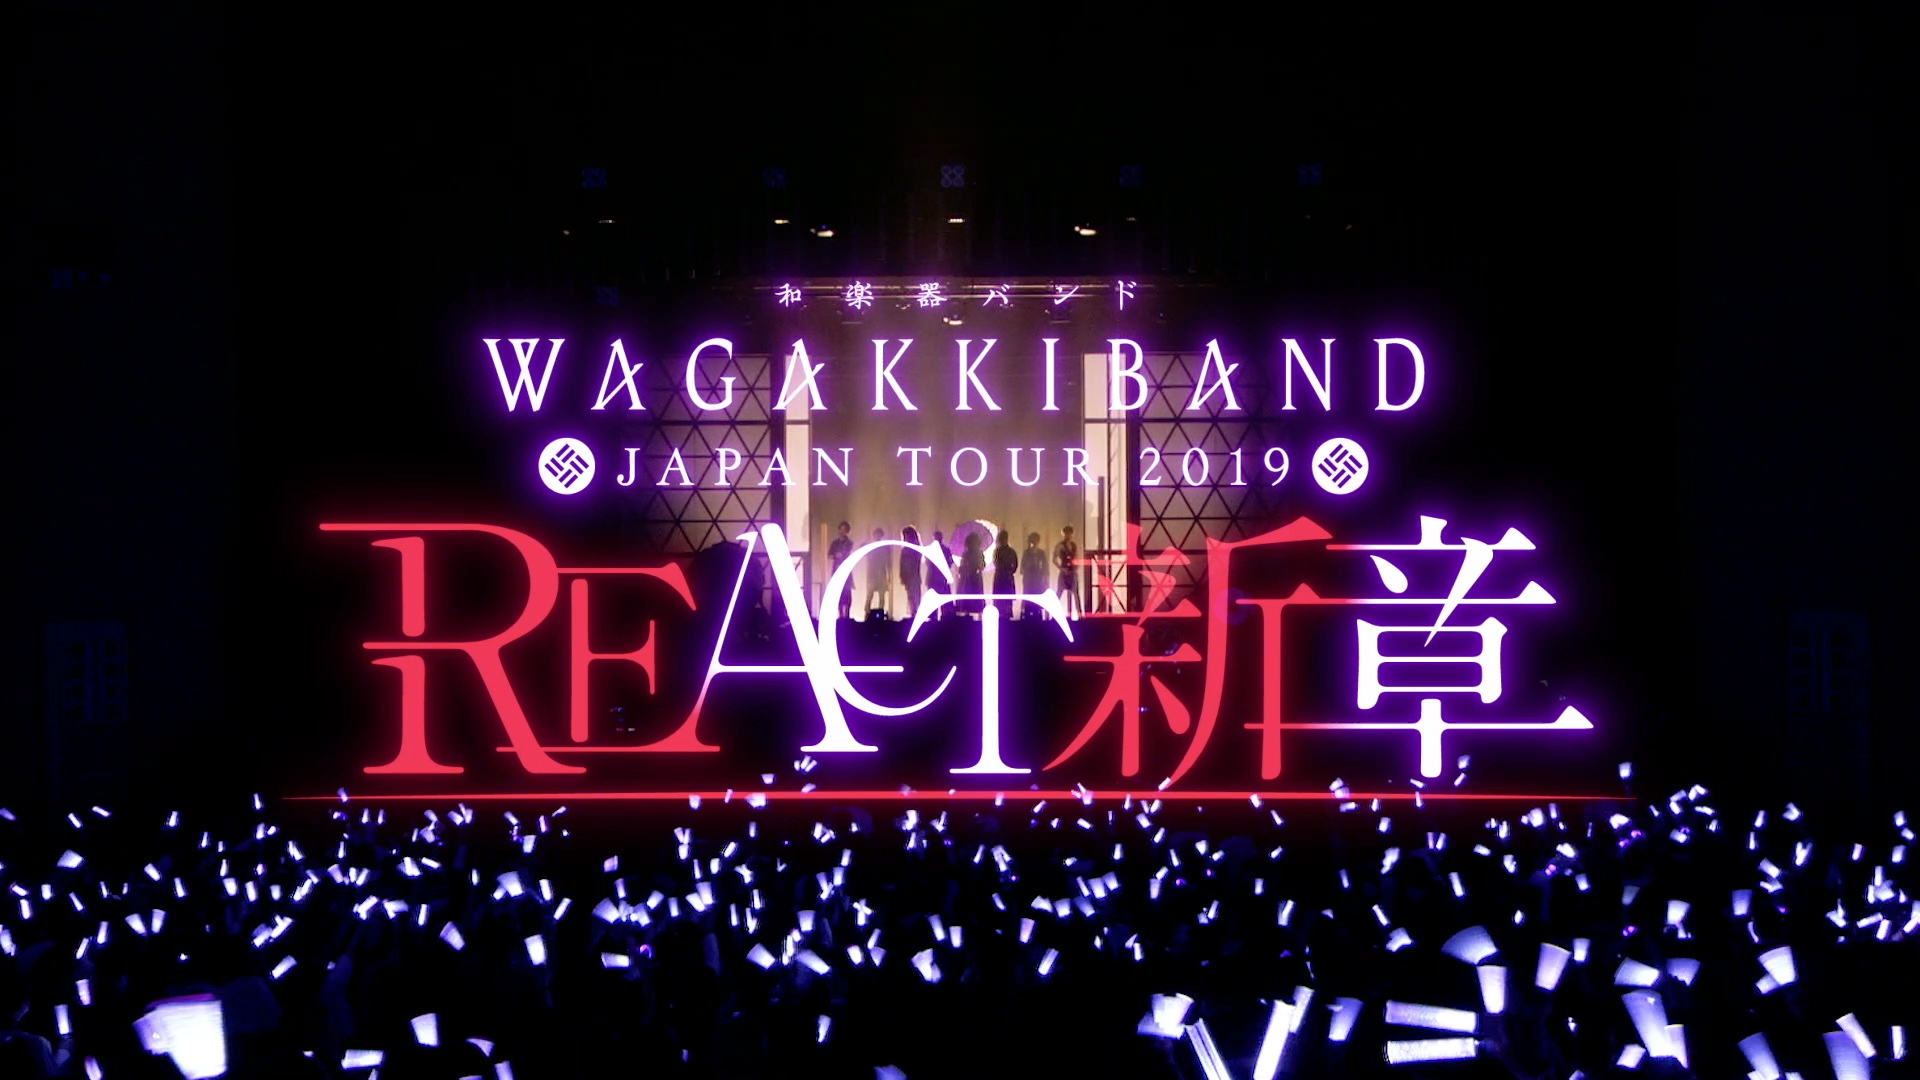 「和楽器バンド Japan Tour 2019 REACT-新章- @ 横須賀芸術劇場 LIVE ダイジェスト」